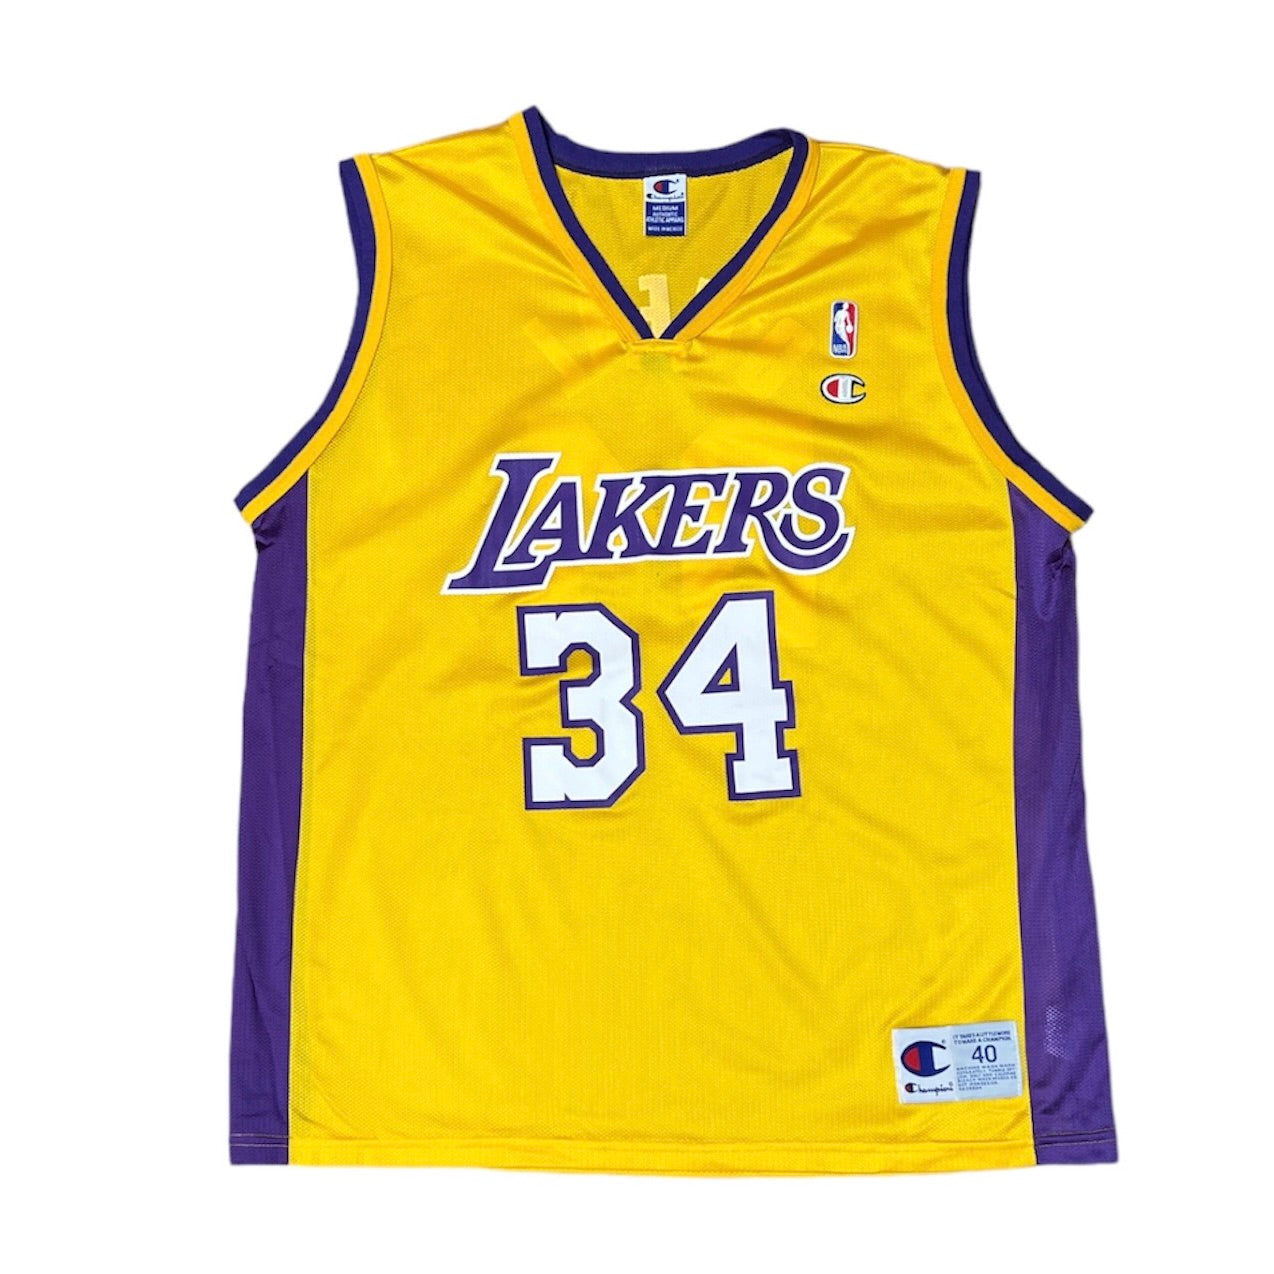 Champion Shaq O'Neal Lakers Basketball Jersey